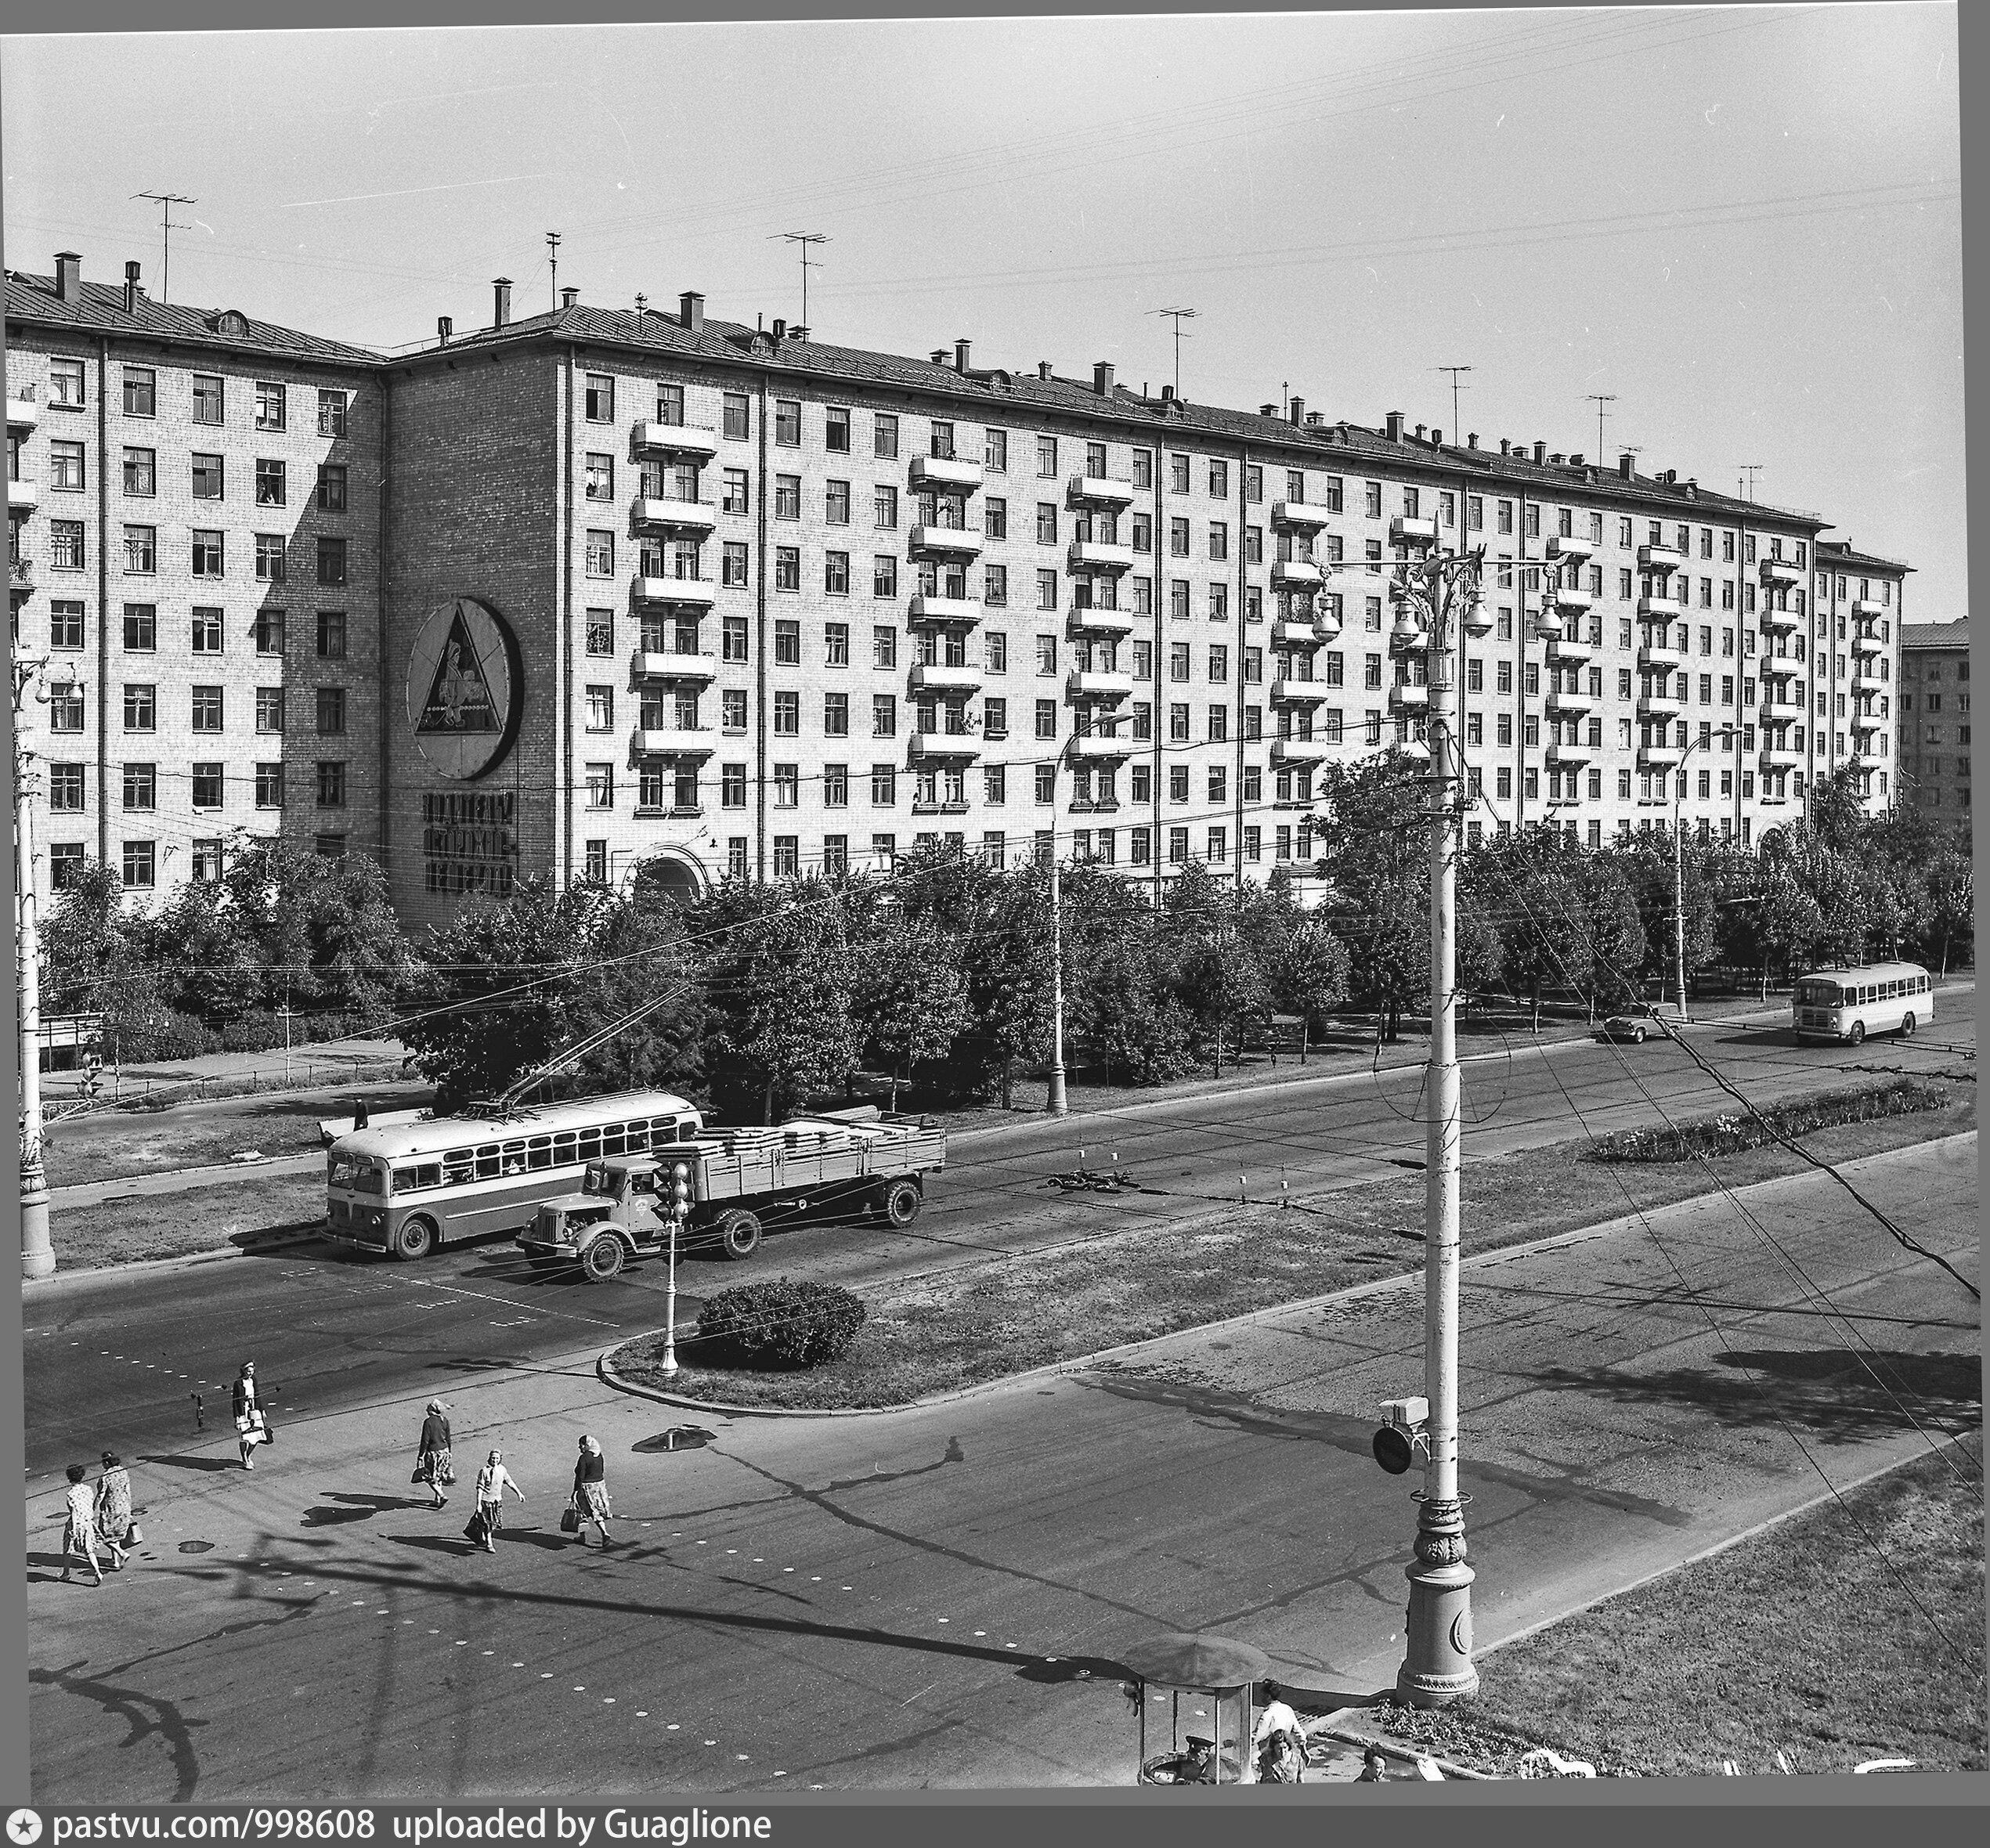 универмаг москва на ленинском проспекте старые